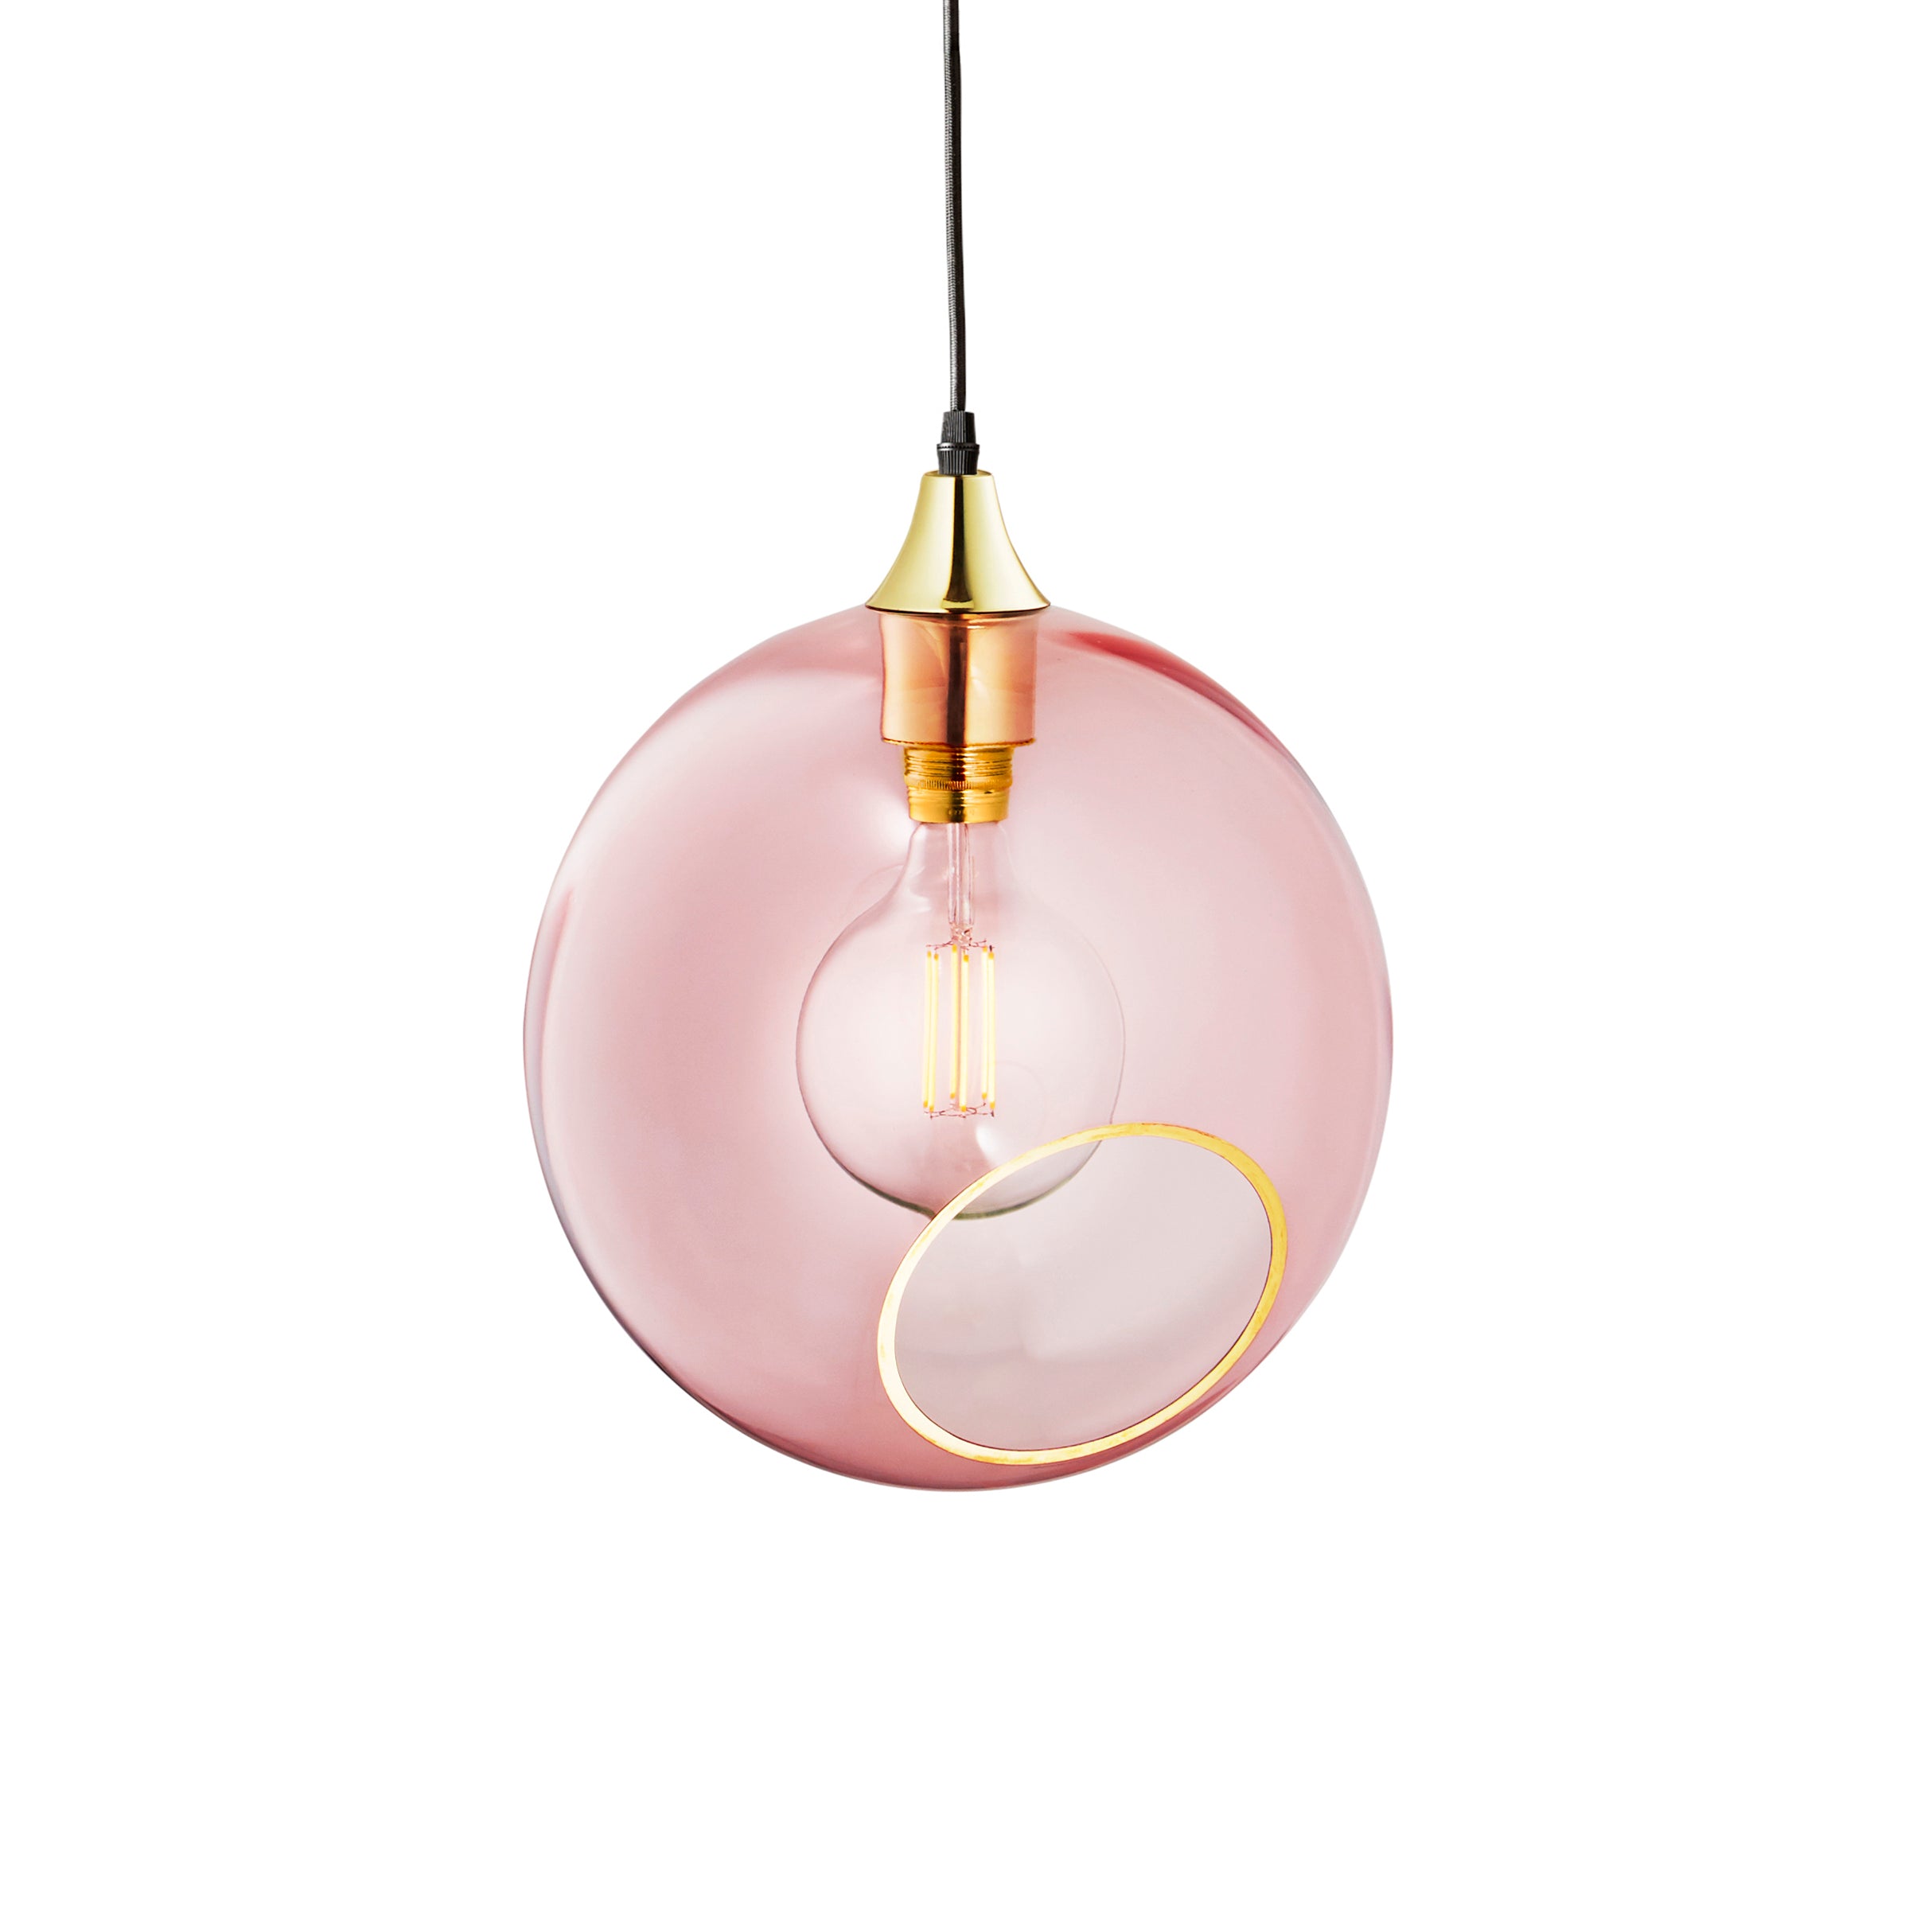 Rund pære fra Design by Us med et varmt og klart lys monteret i ballroom lampen også fra Design by Us.